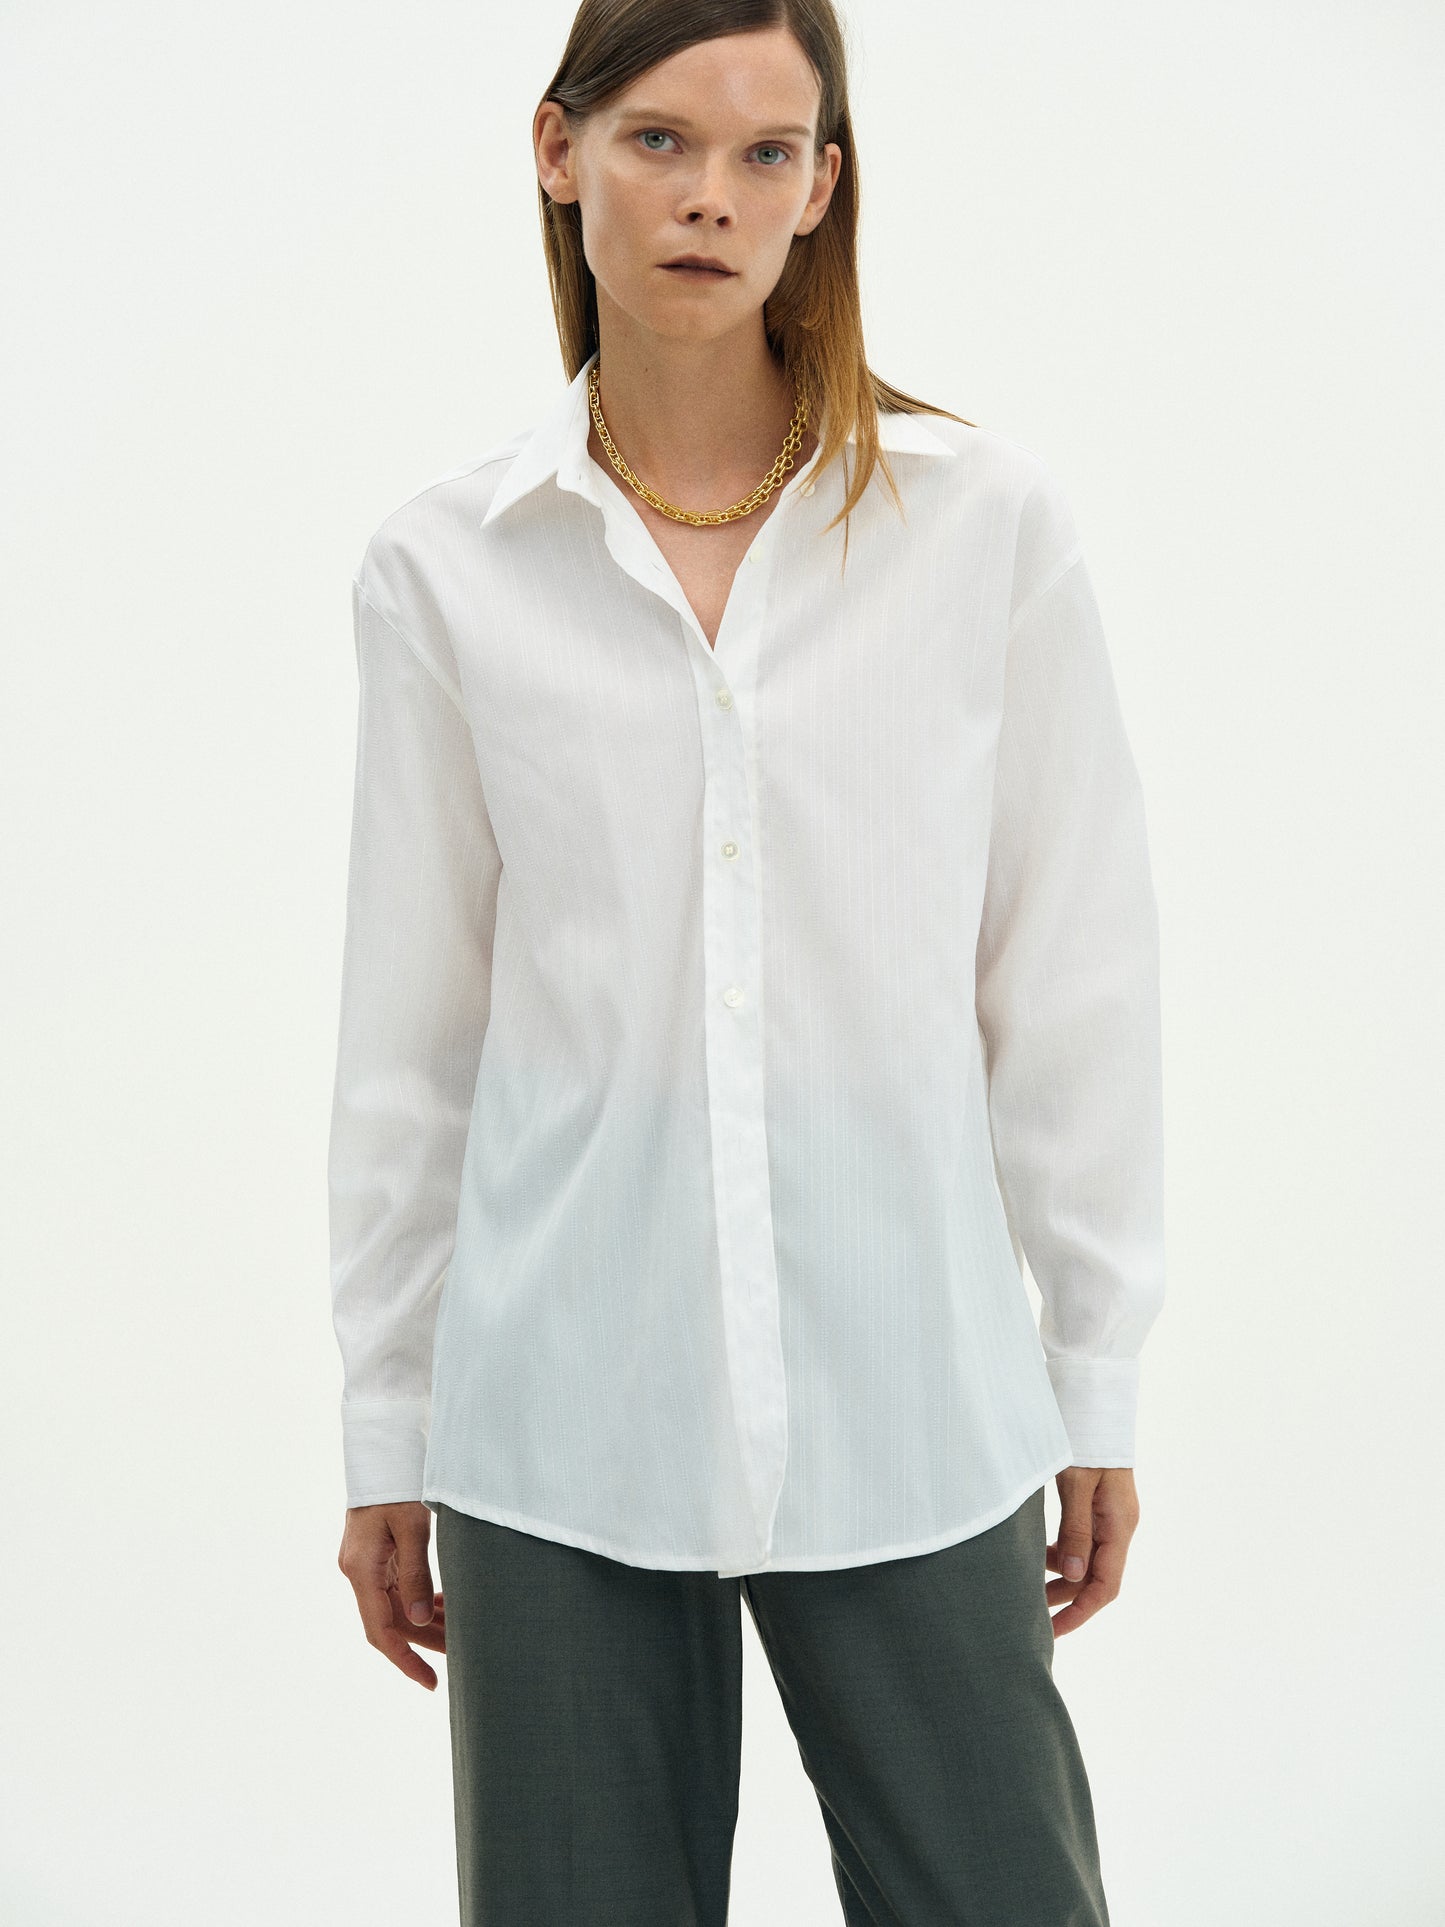 Pinstripe Suit Shirt, White